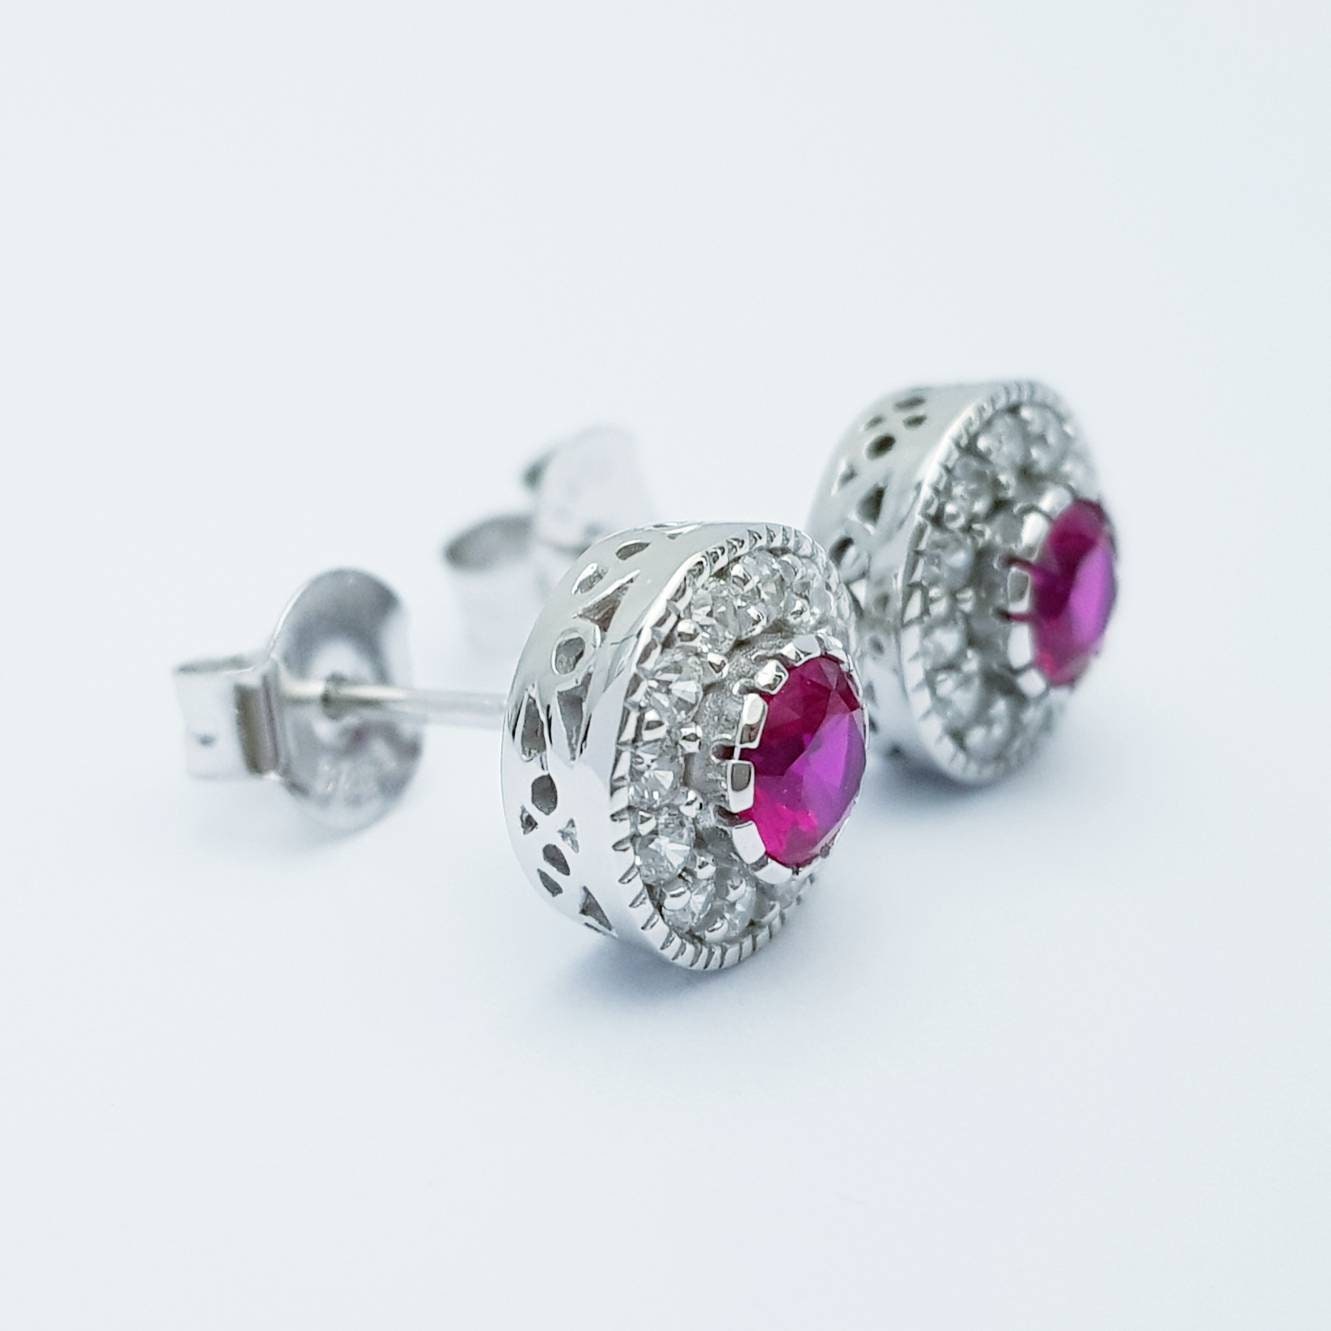 Red earrings, ruby stud earrings, gift for women, vintage earrings, diamond halo earrings, earrings for women, July birthstone studs